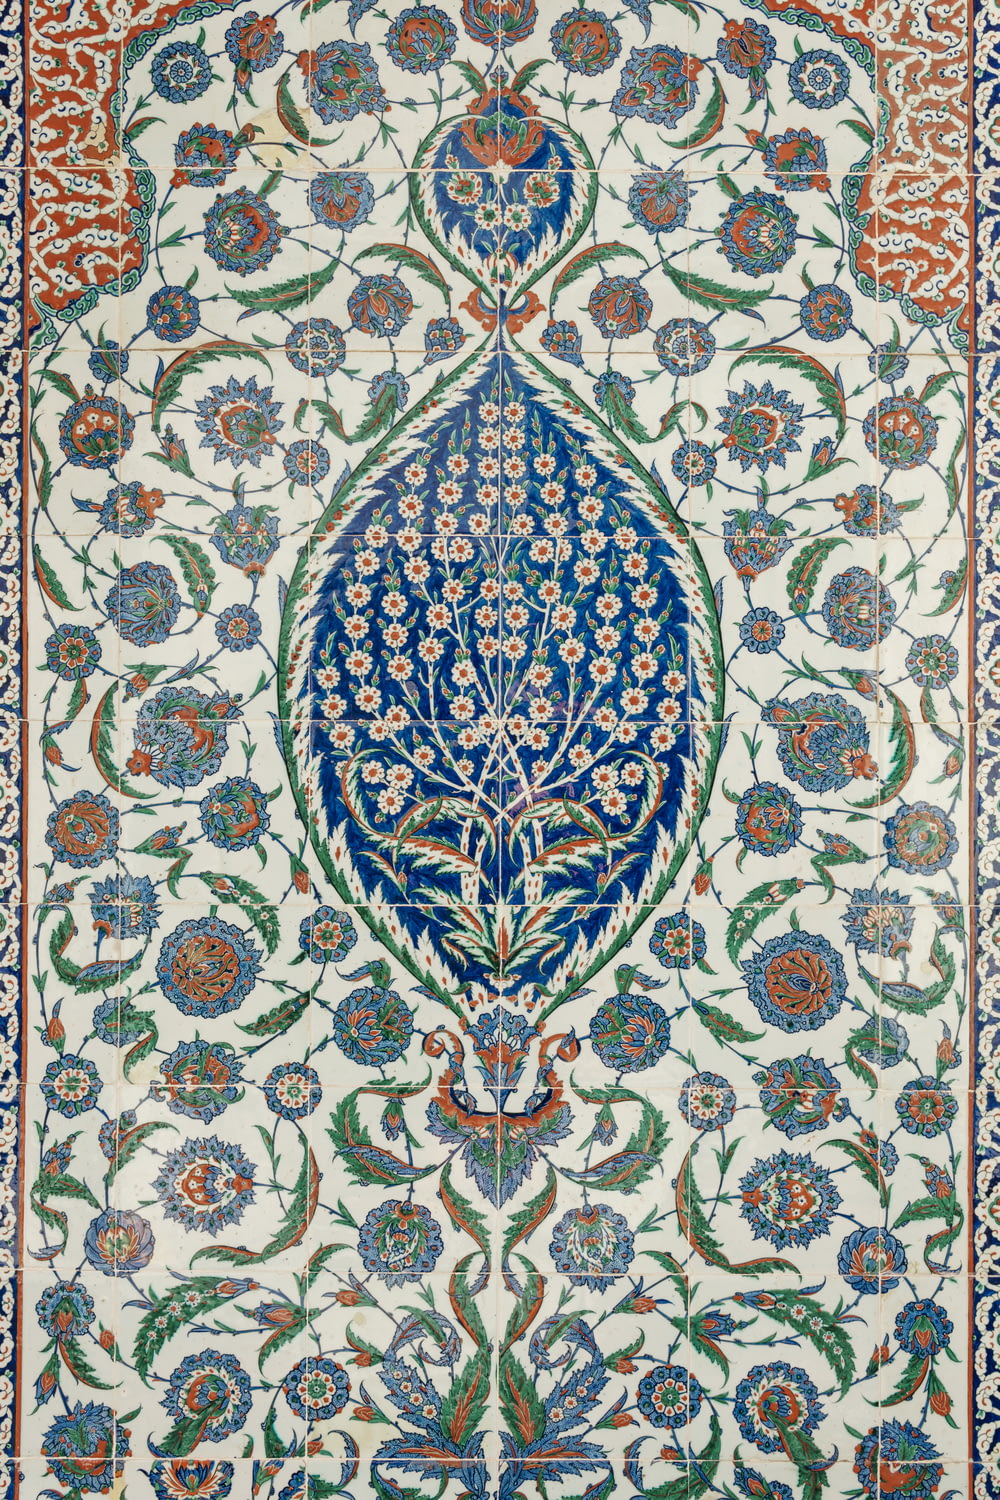 Ein aufwendig gestalteter Teppich mit blauen und grünen Blumen